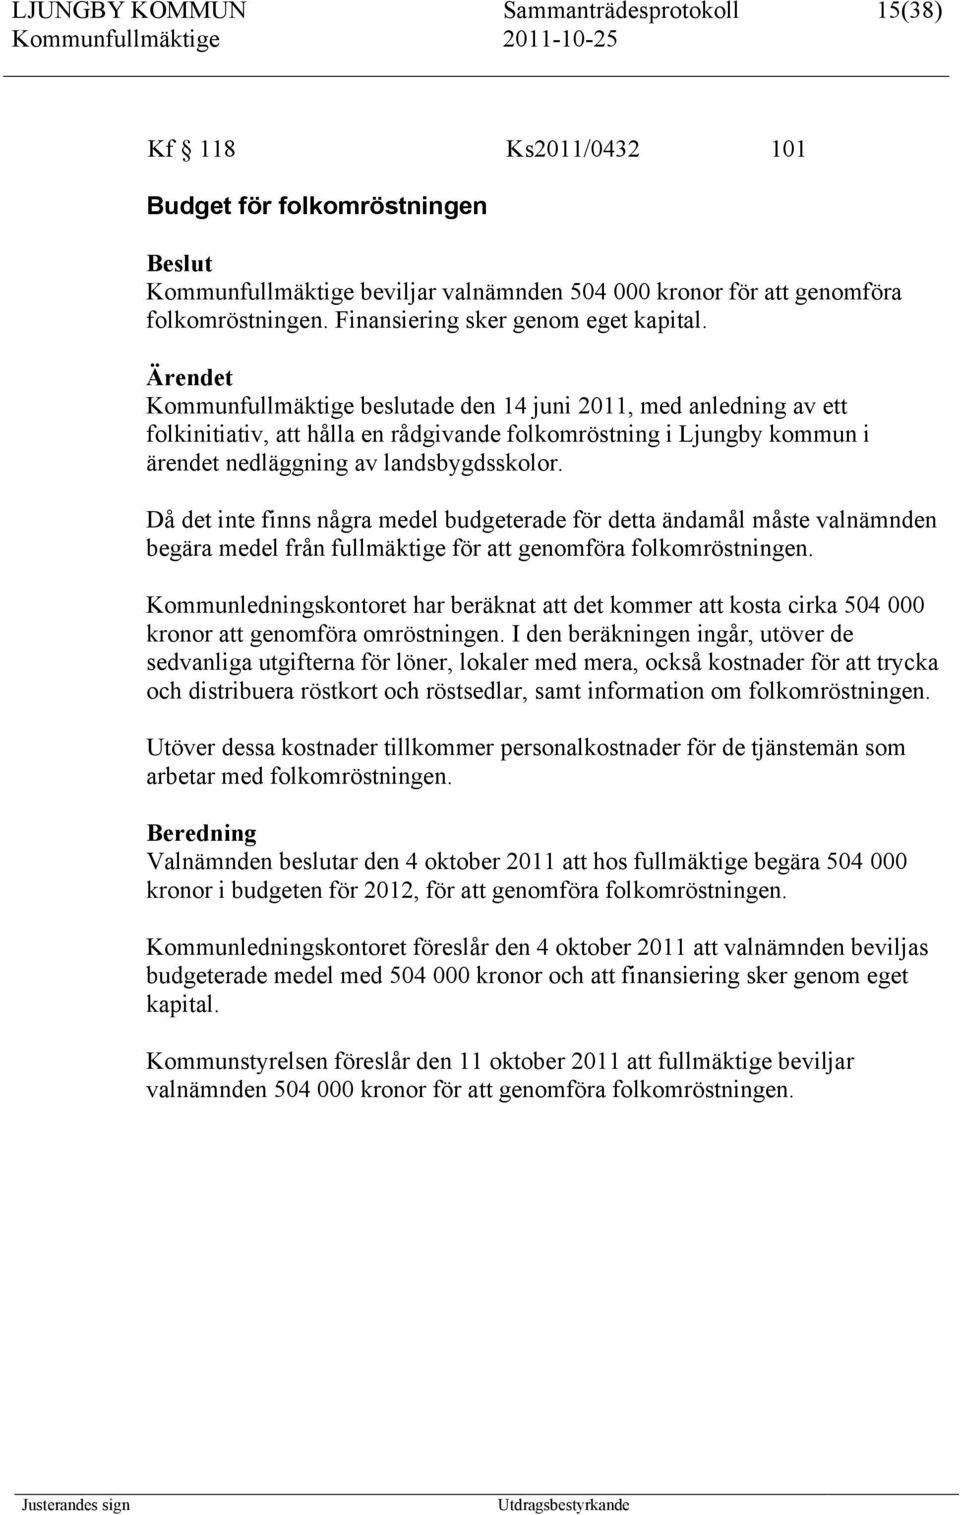 Kommunfullmäktige beslutade den 14 juni 2011, med anledning av ett folkinitiativ, att hålla en rådgivande folkomröstning i Ljungby kommun i ärendet nedläggning av landsbygdsskolor.